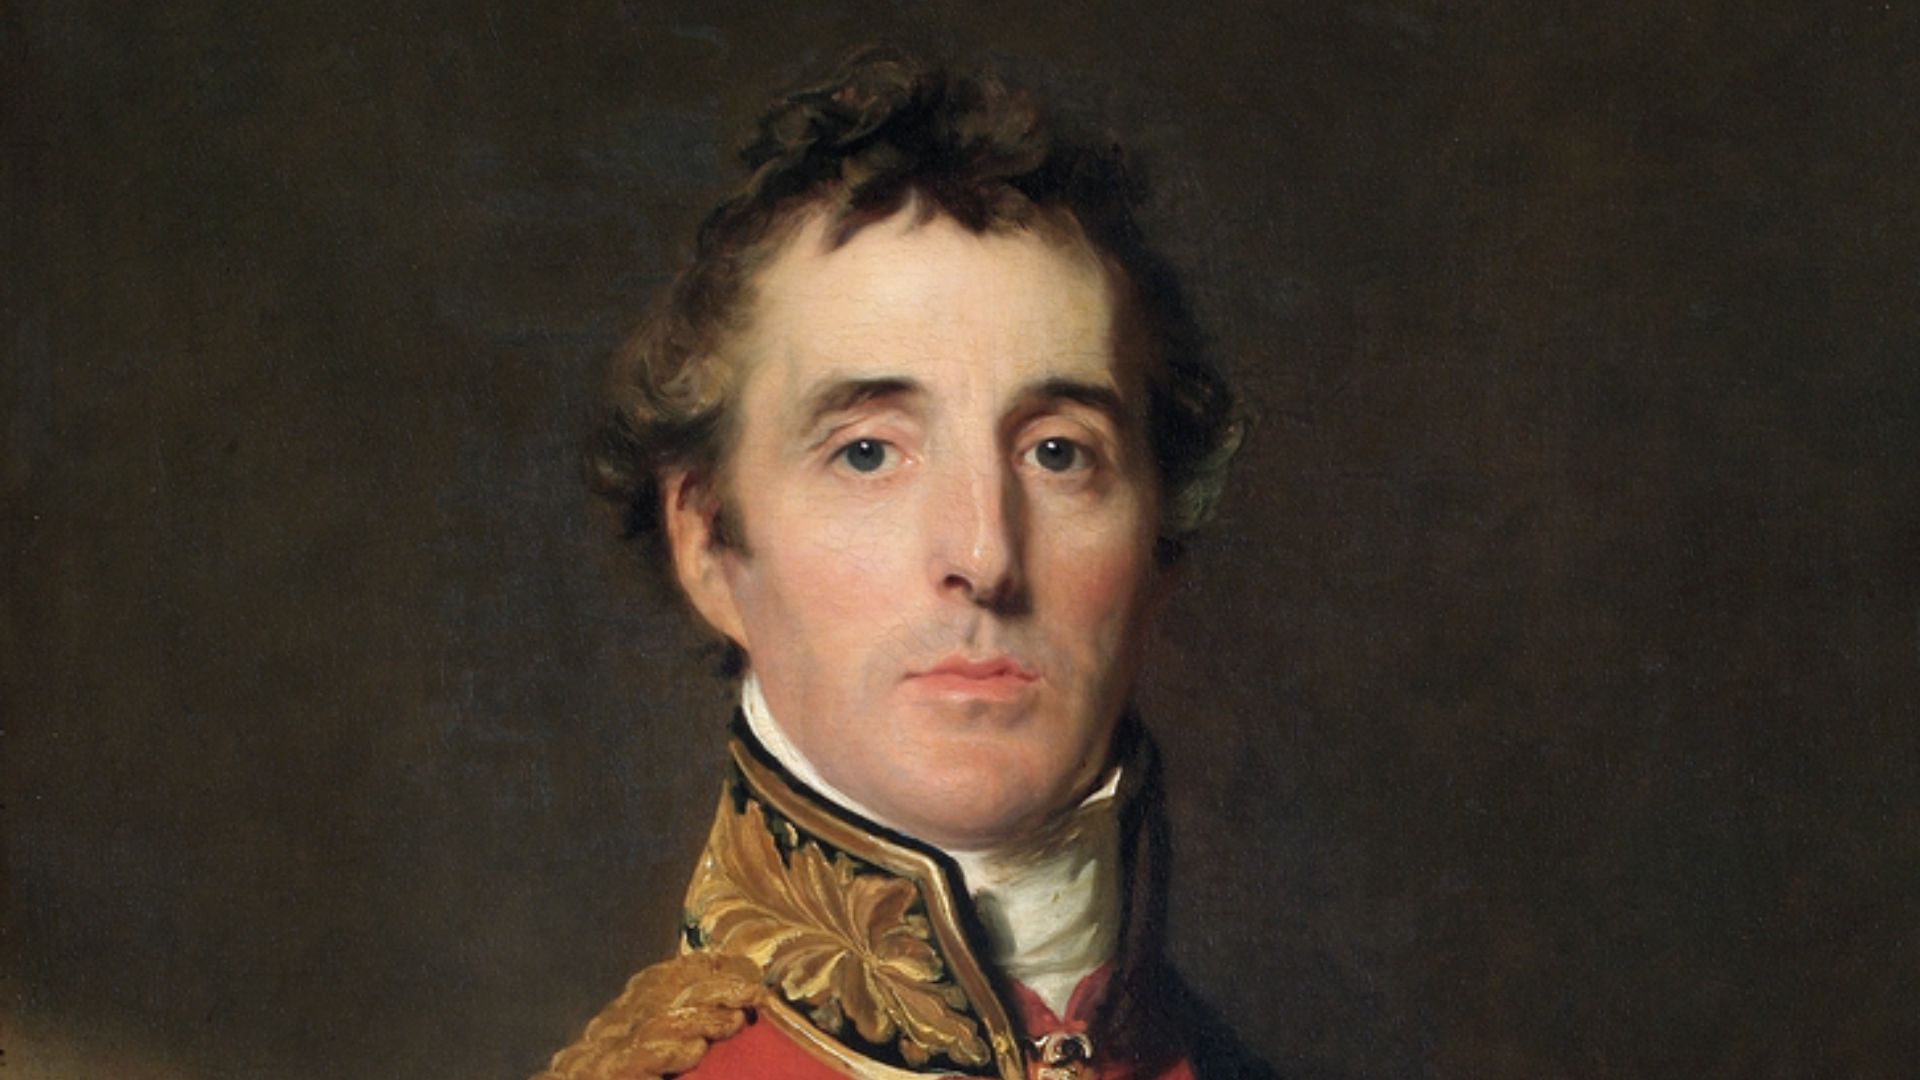 Duke of Wellington: Tokoh Militer dan Politik Terkemuka Inggris